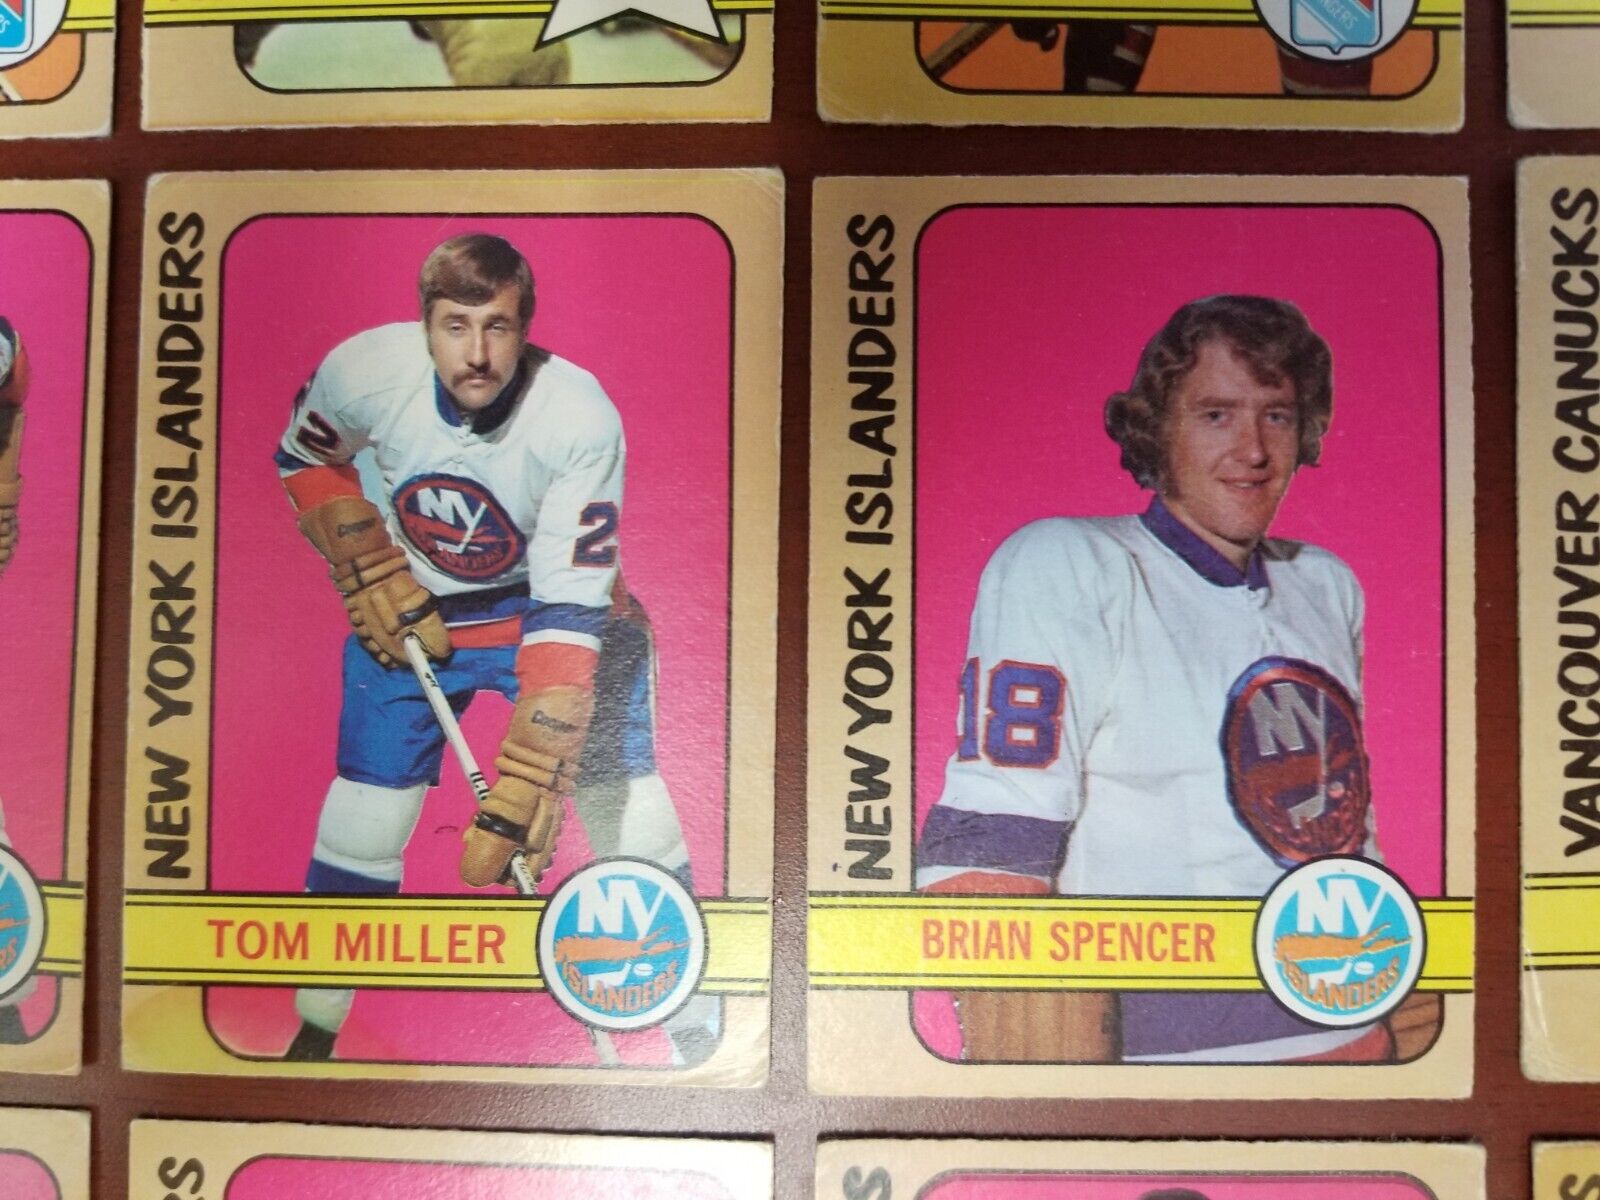 1972-73 OPC lot of 18 featuring the N.Y. Rangers & N.Y. Islanders with 6 rookies